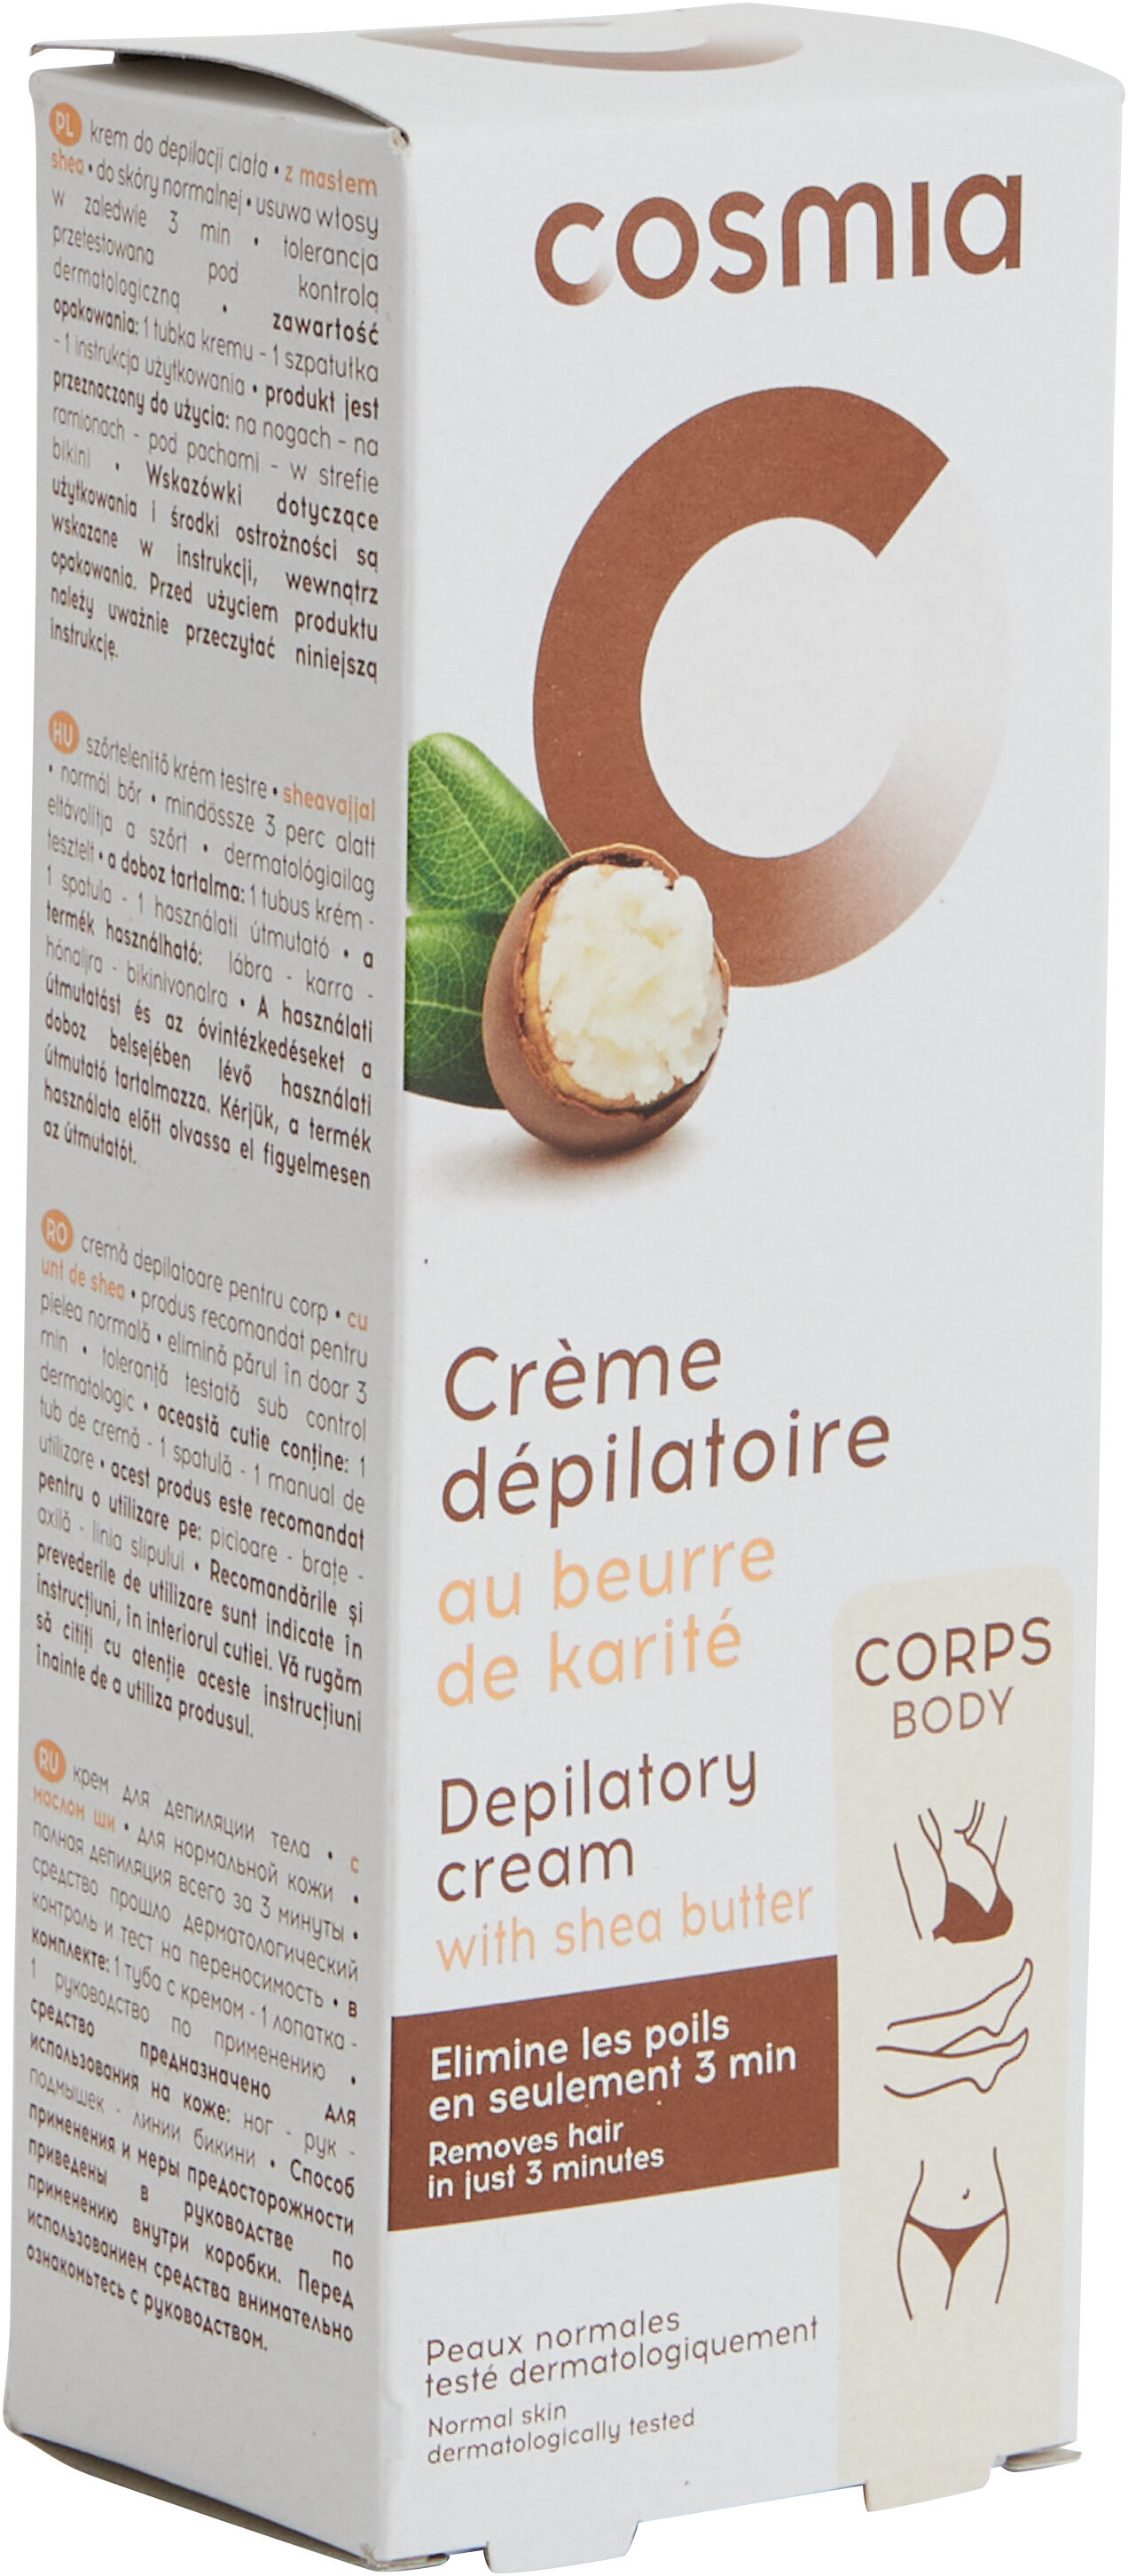 Crème dépilatoire au beurre de karité - Produkto - fr